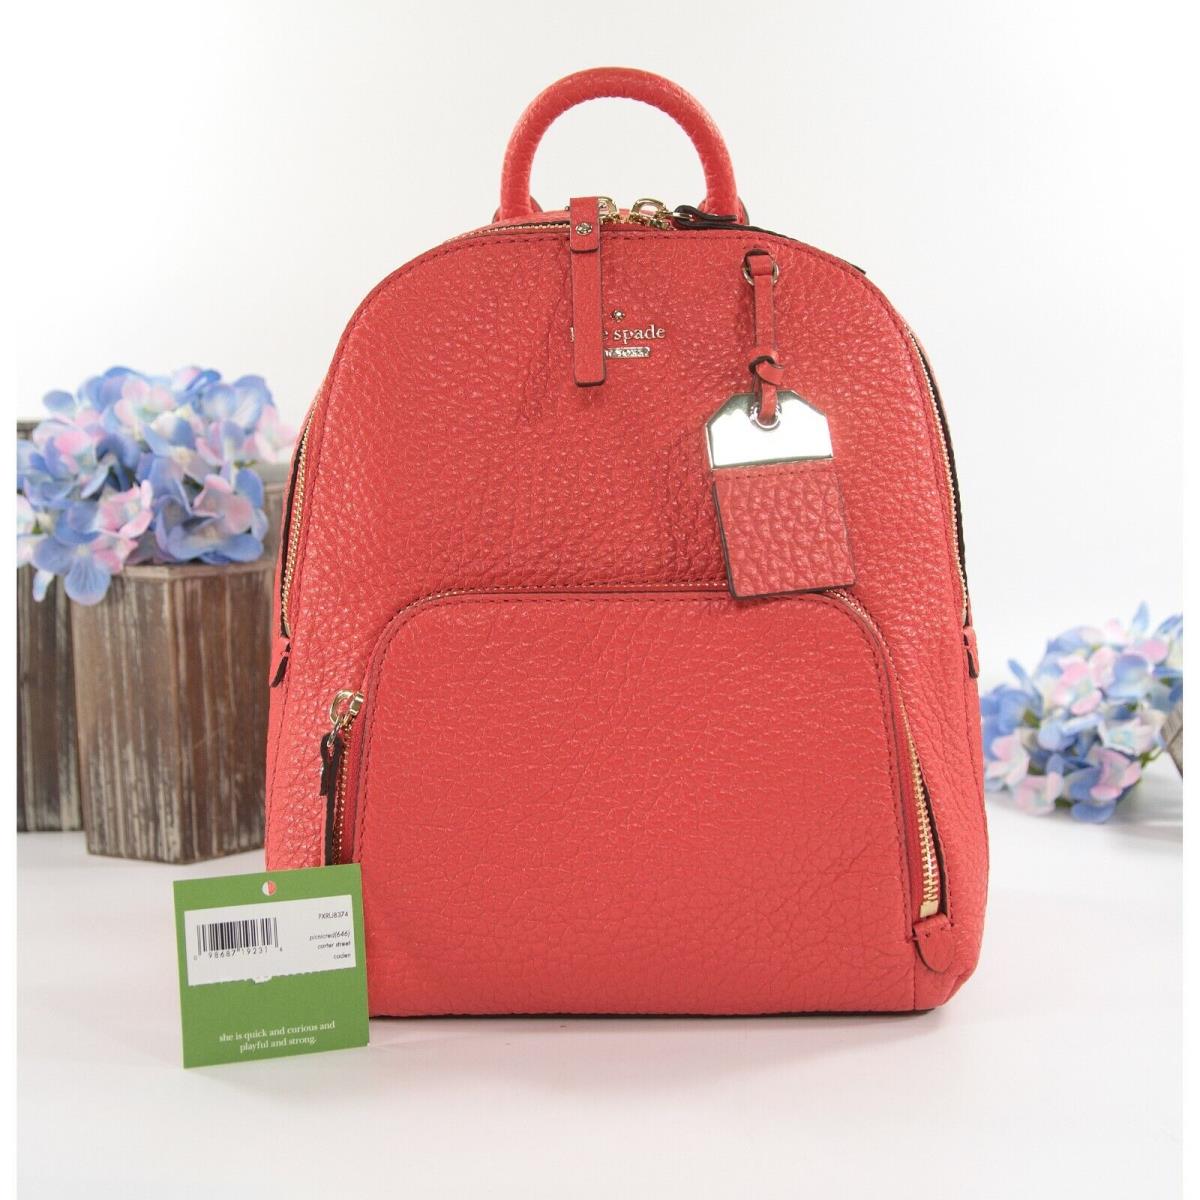 Kate Spade Carter Street Caden Picnic Red Leather Backpack Bag